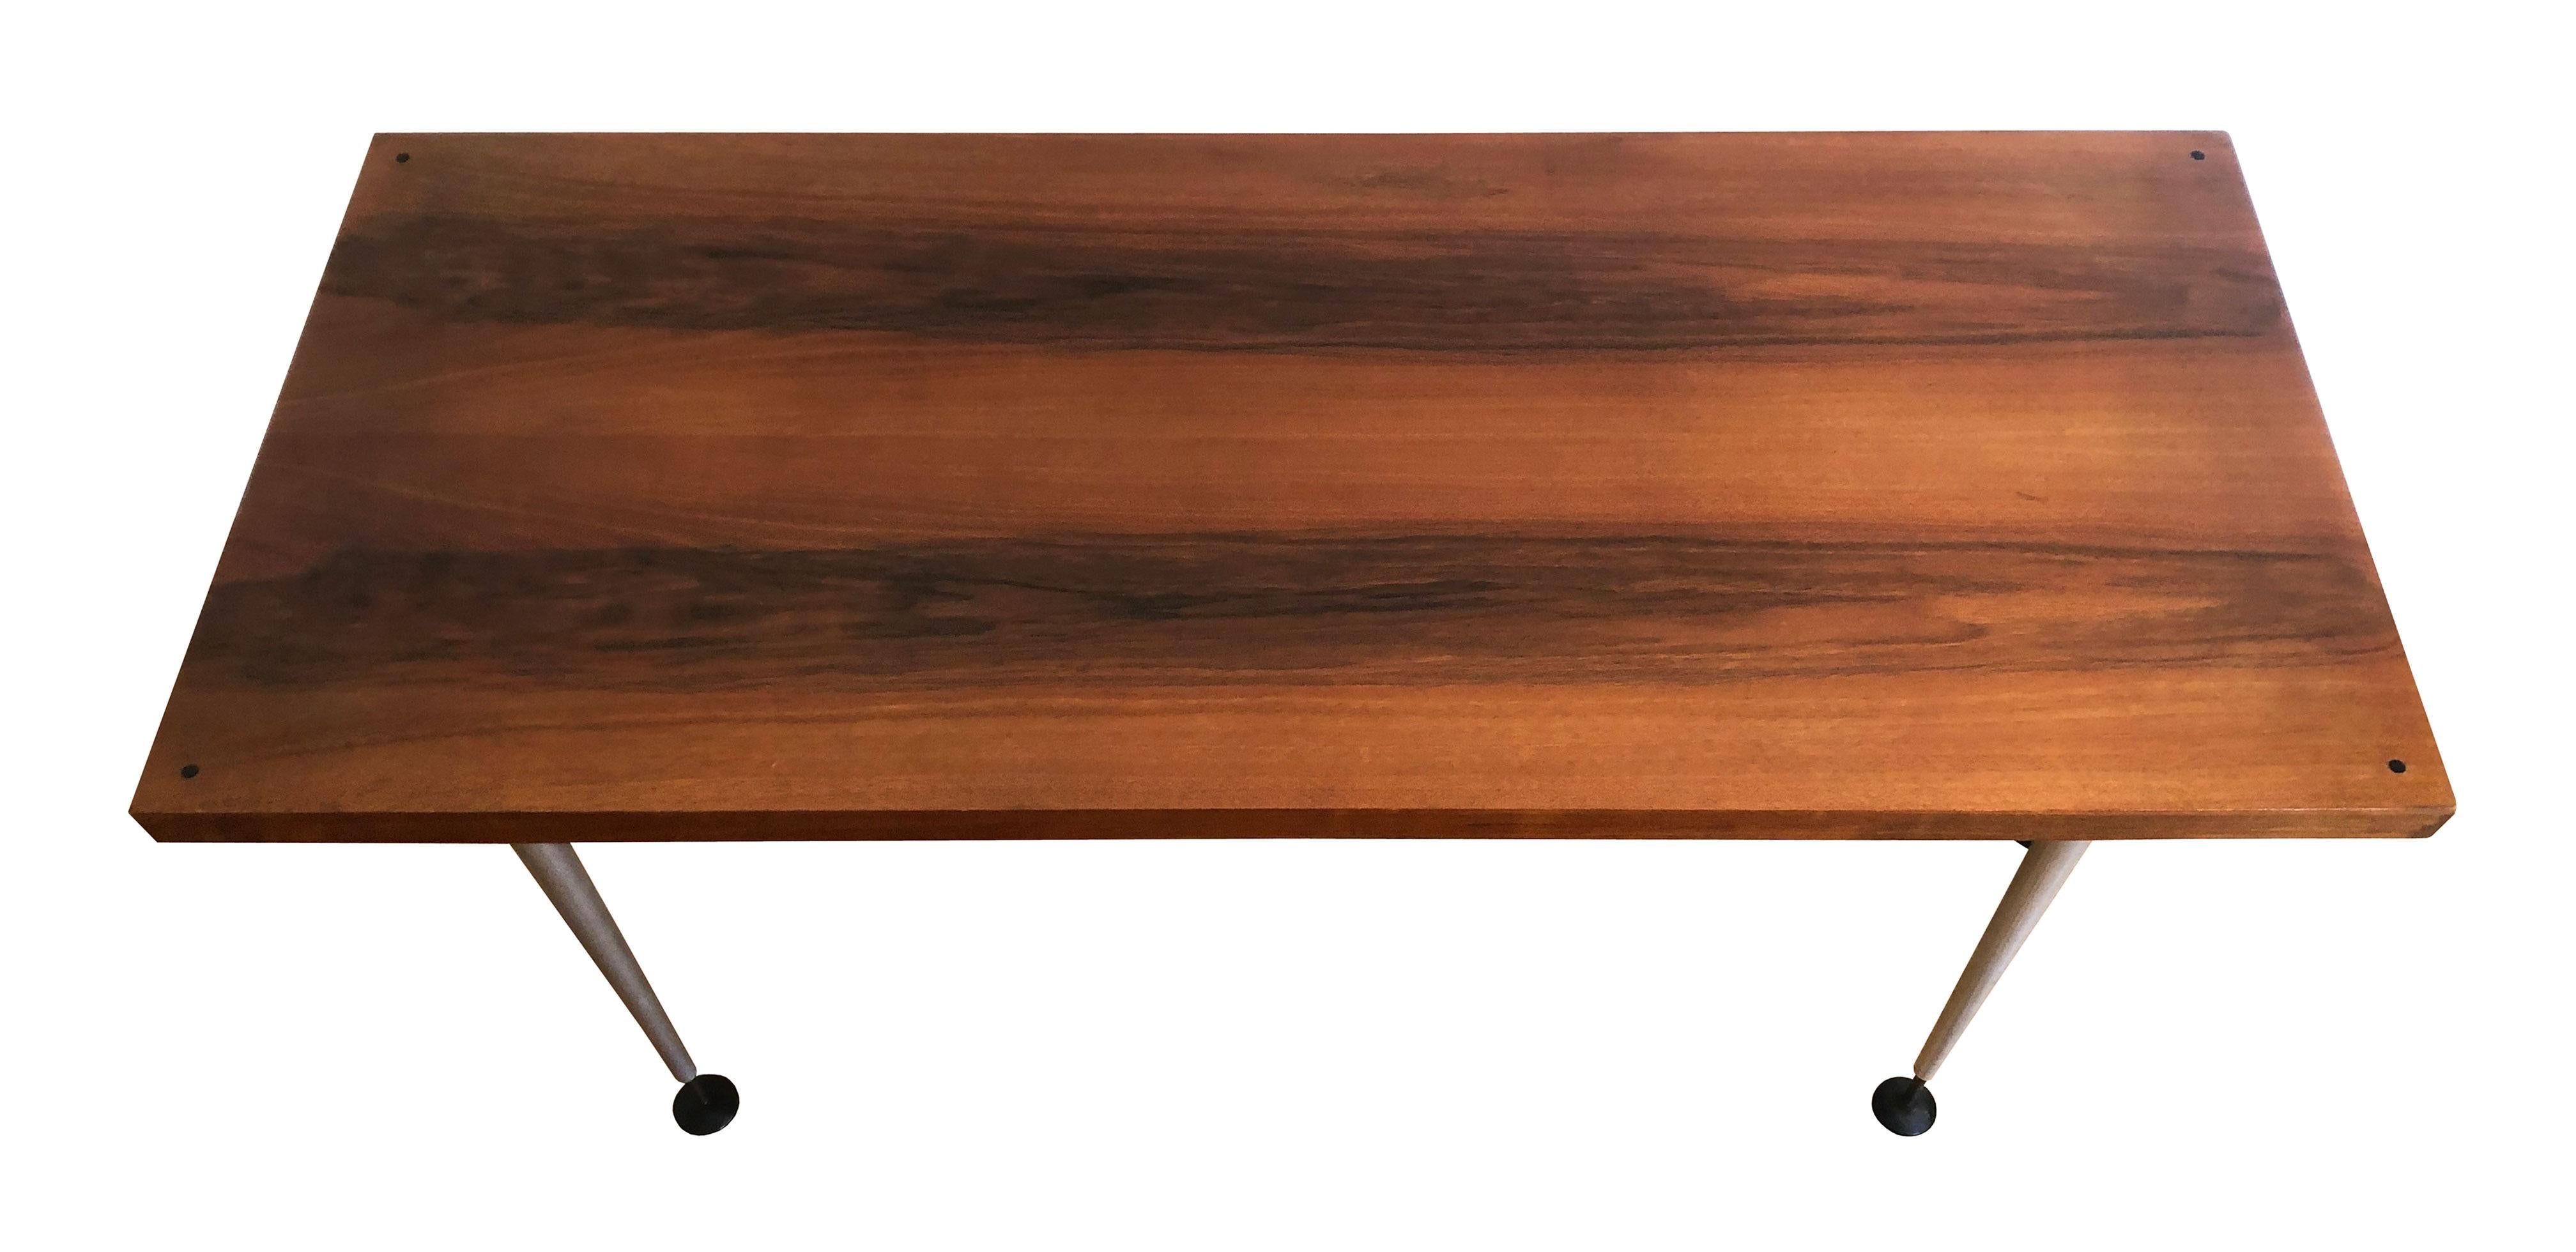 Table d'appoint en bois conçue dans un style combinant le Mid Century Modern et le design High Tech, et produite par Jinota Furniture Company, en Tchécoslovaquie, à la fin des années 1960.

Dans les années 1960 et 1970, le design des meubles